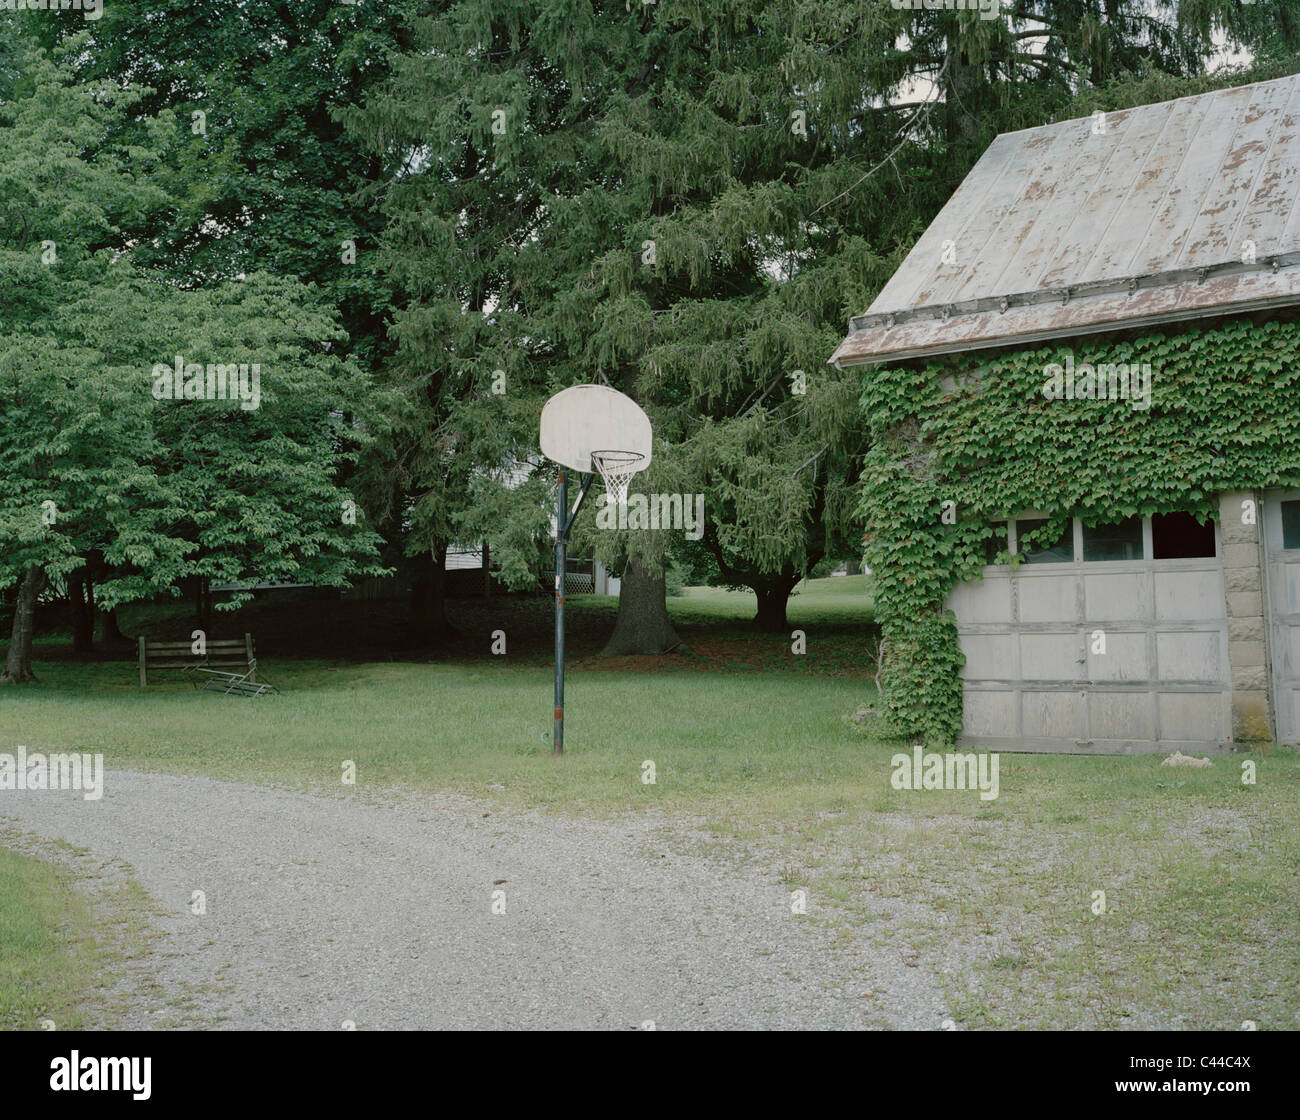 Ein Basketballkorb neben einer garage Stockfoto